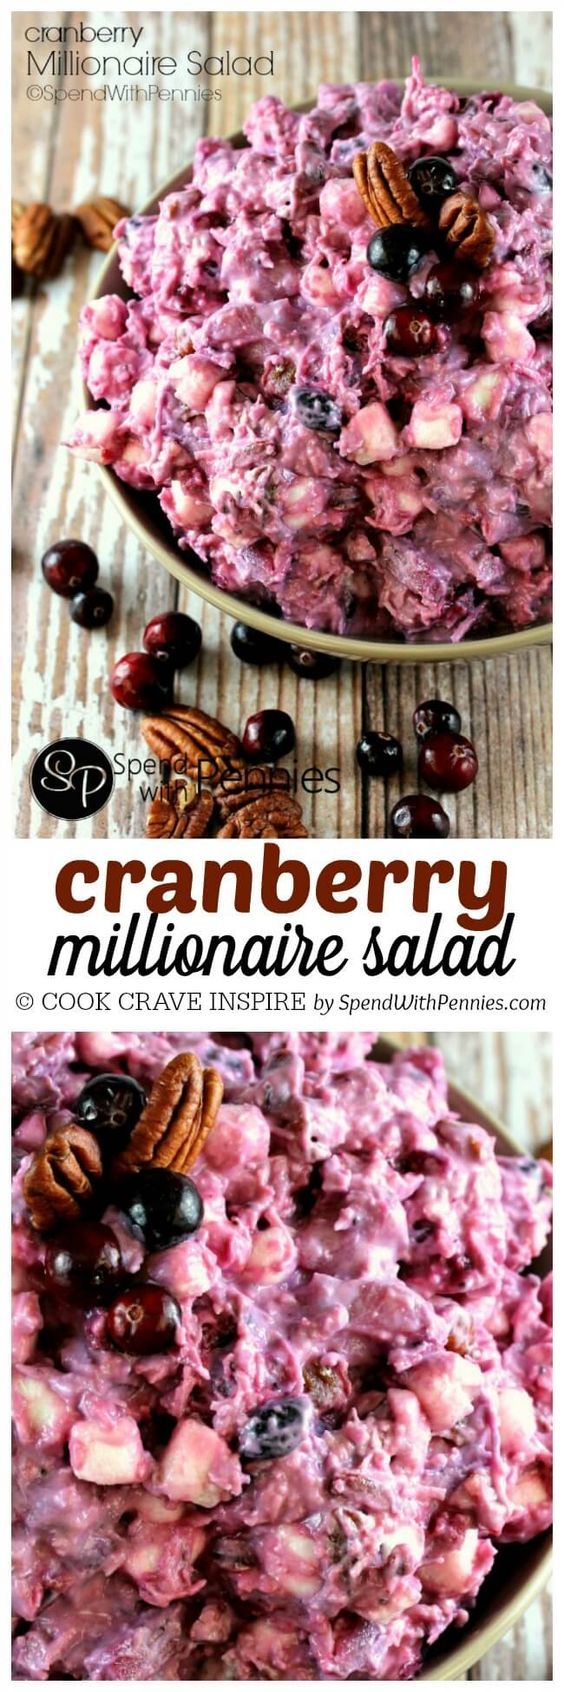 Cranberry Millionaire Salad